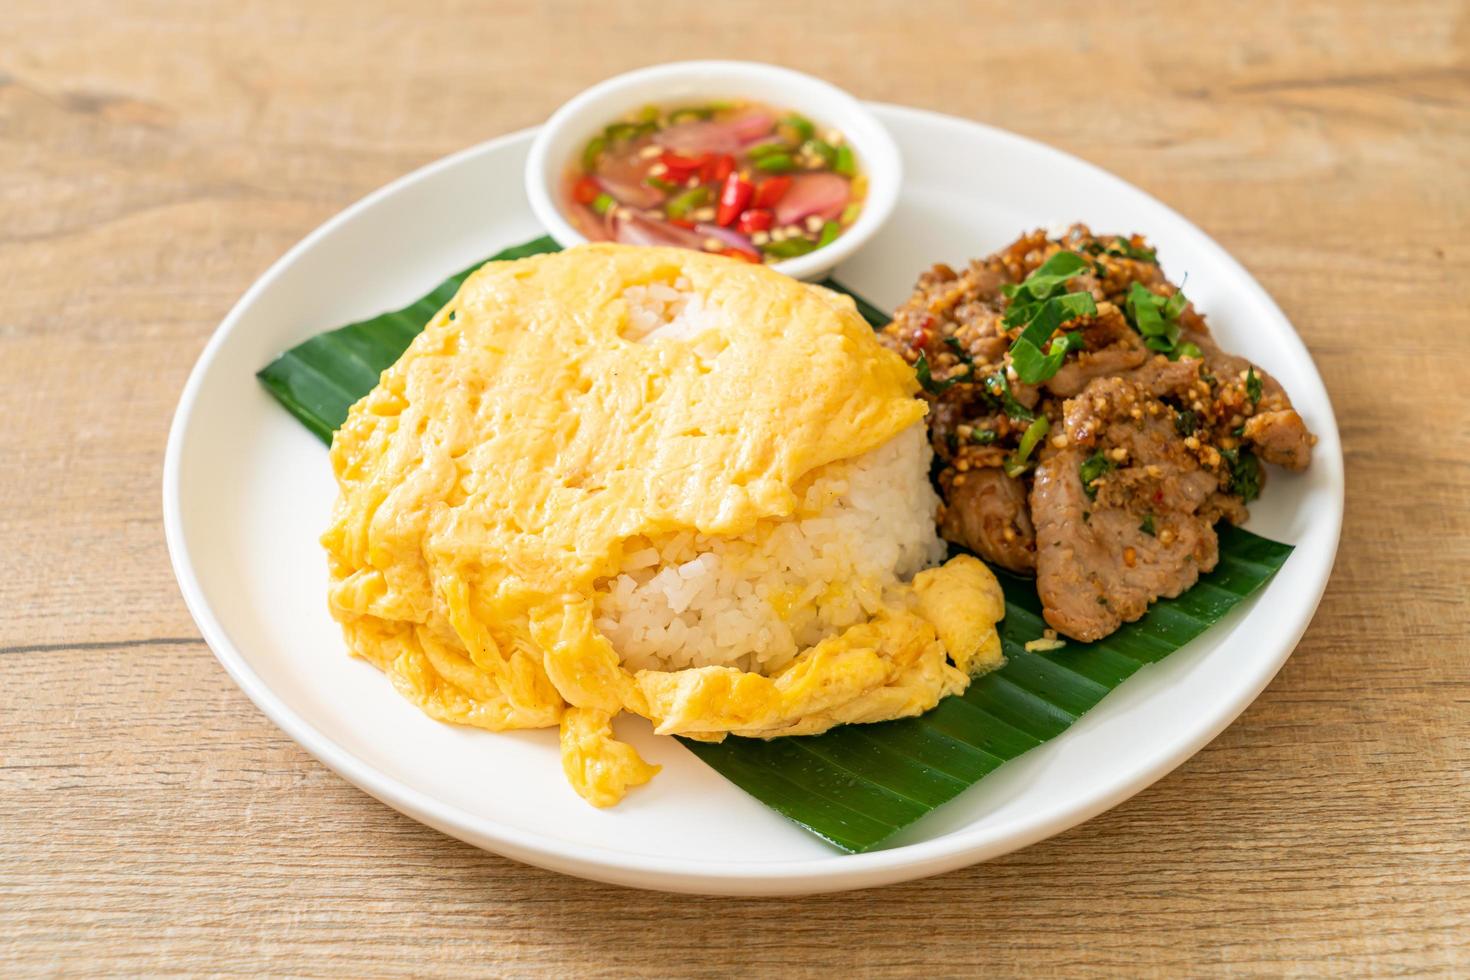 ägg på toppat ris med grillat fläsk och kryddig sås - asiatisk matstil foto